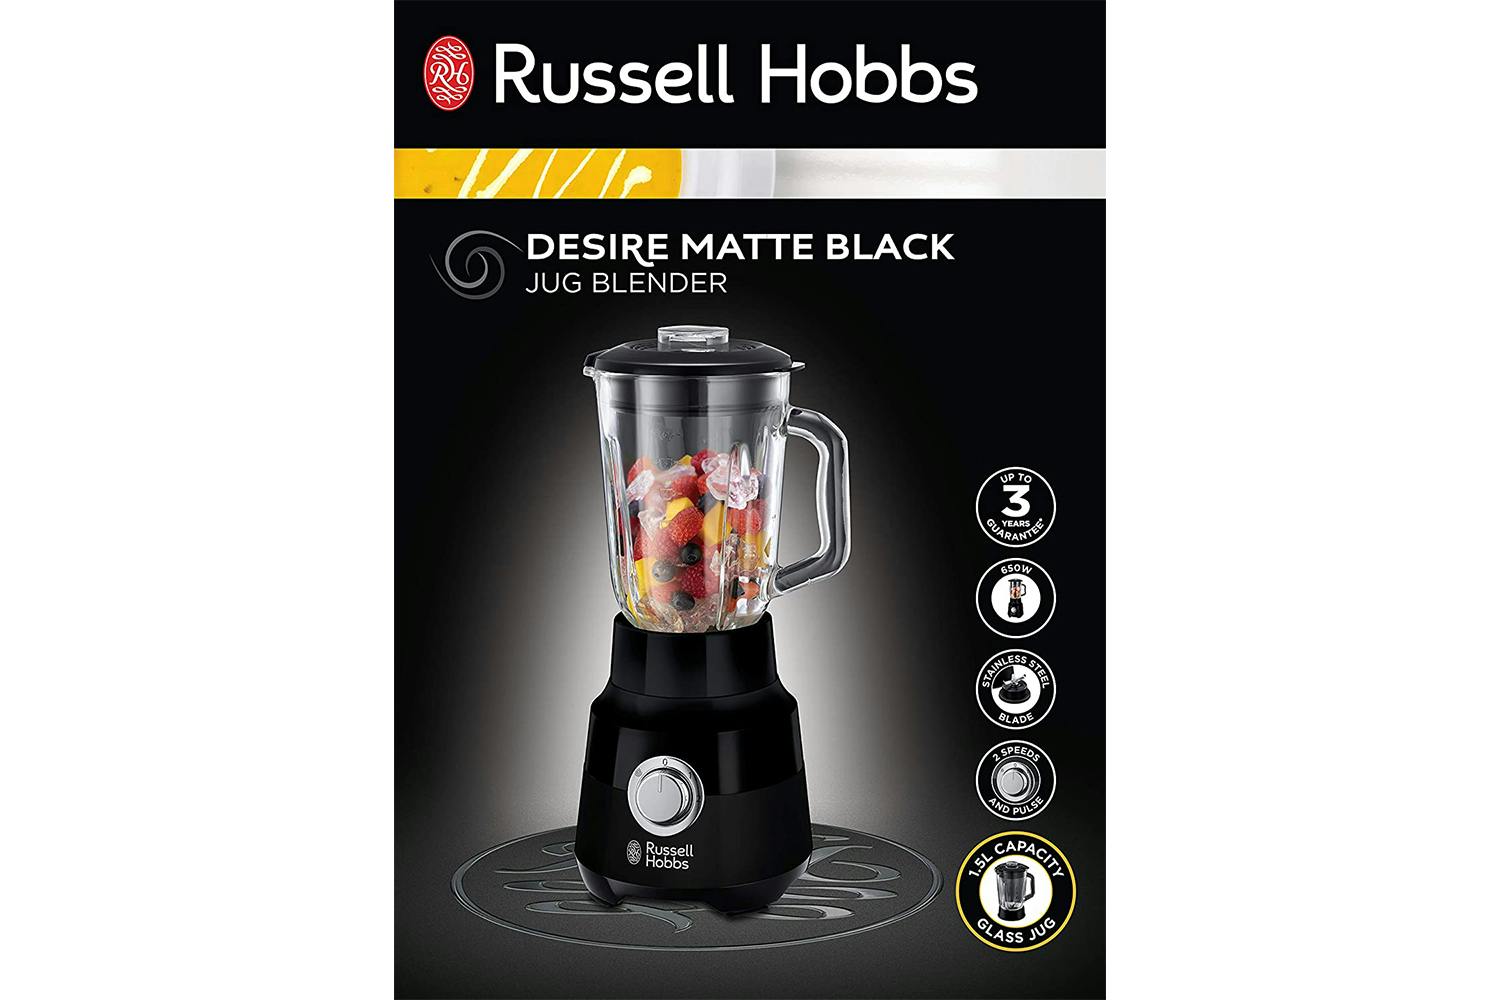 Blender MATTE DESIRE BLACK Russell hobbs 24722-56